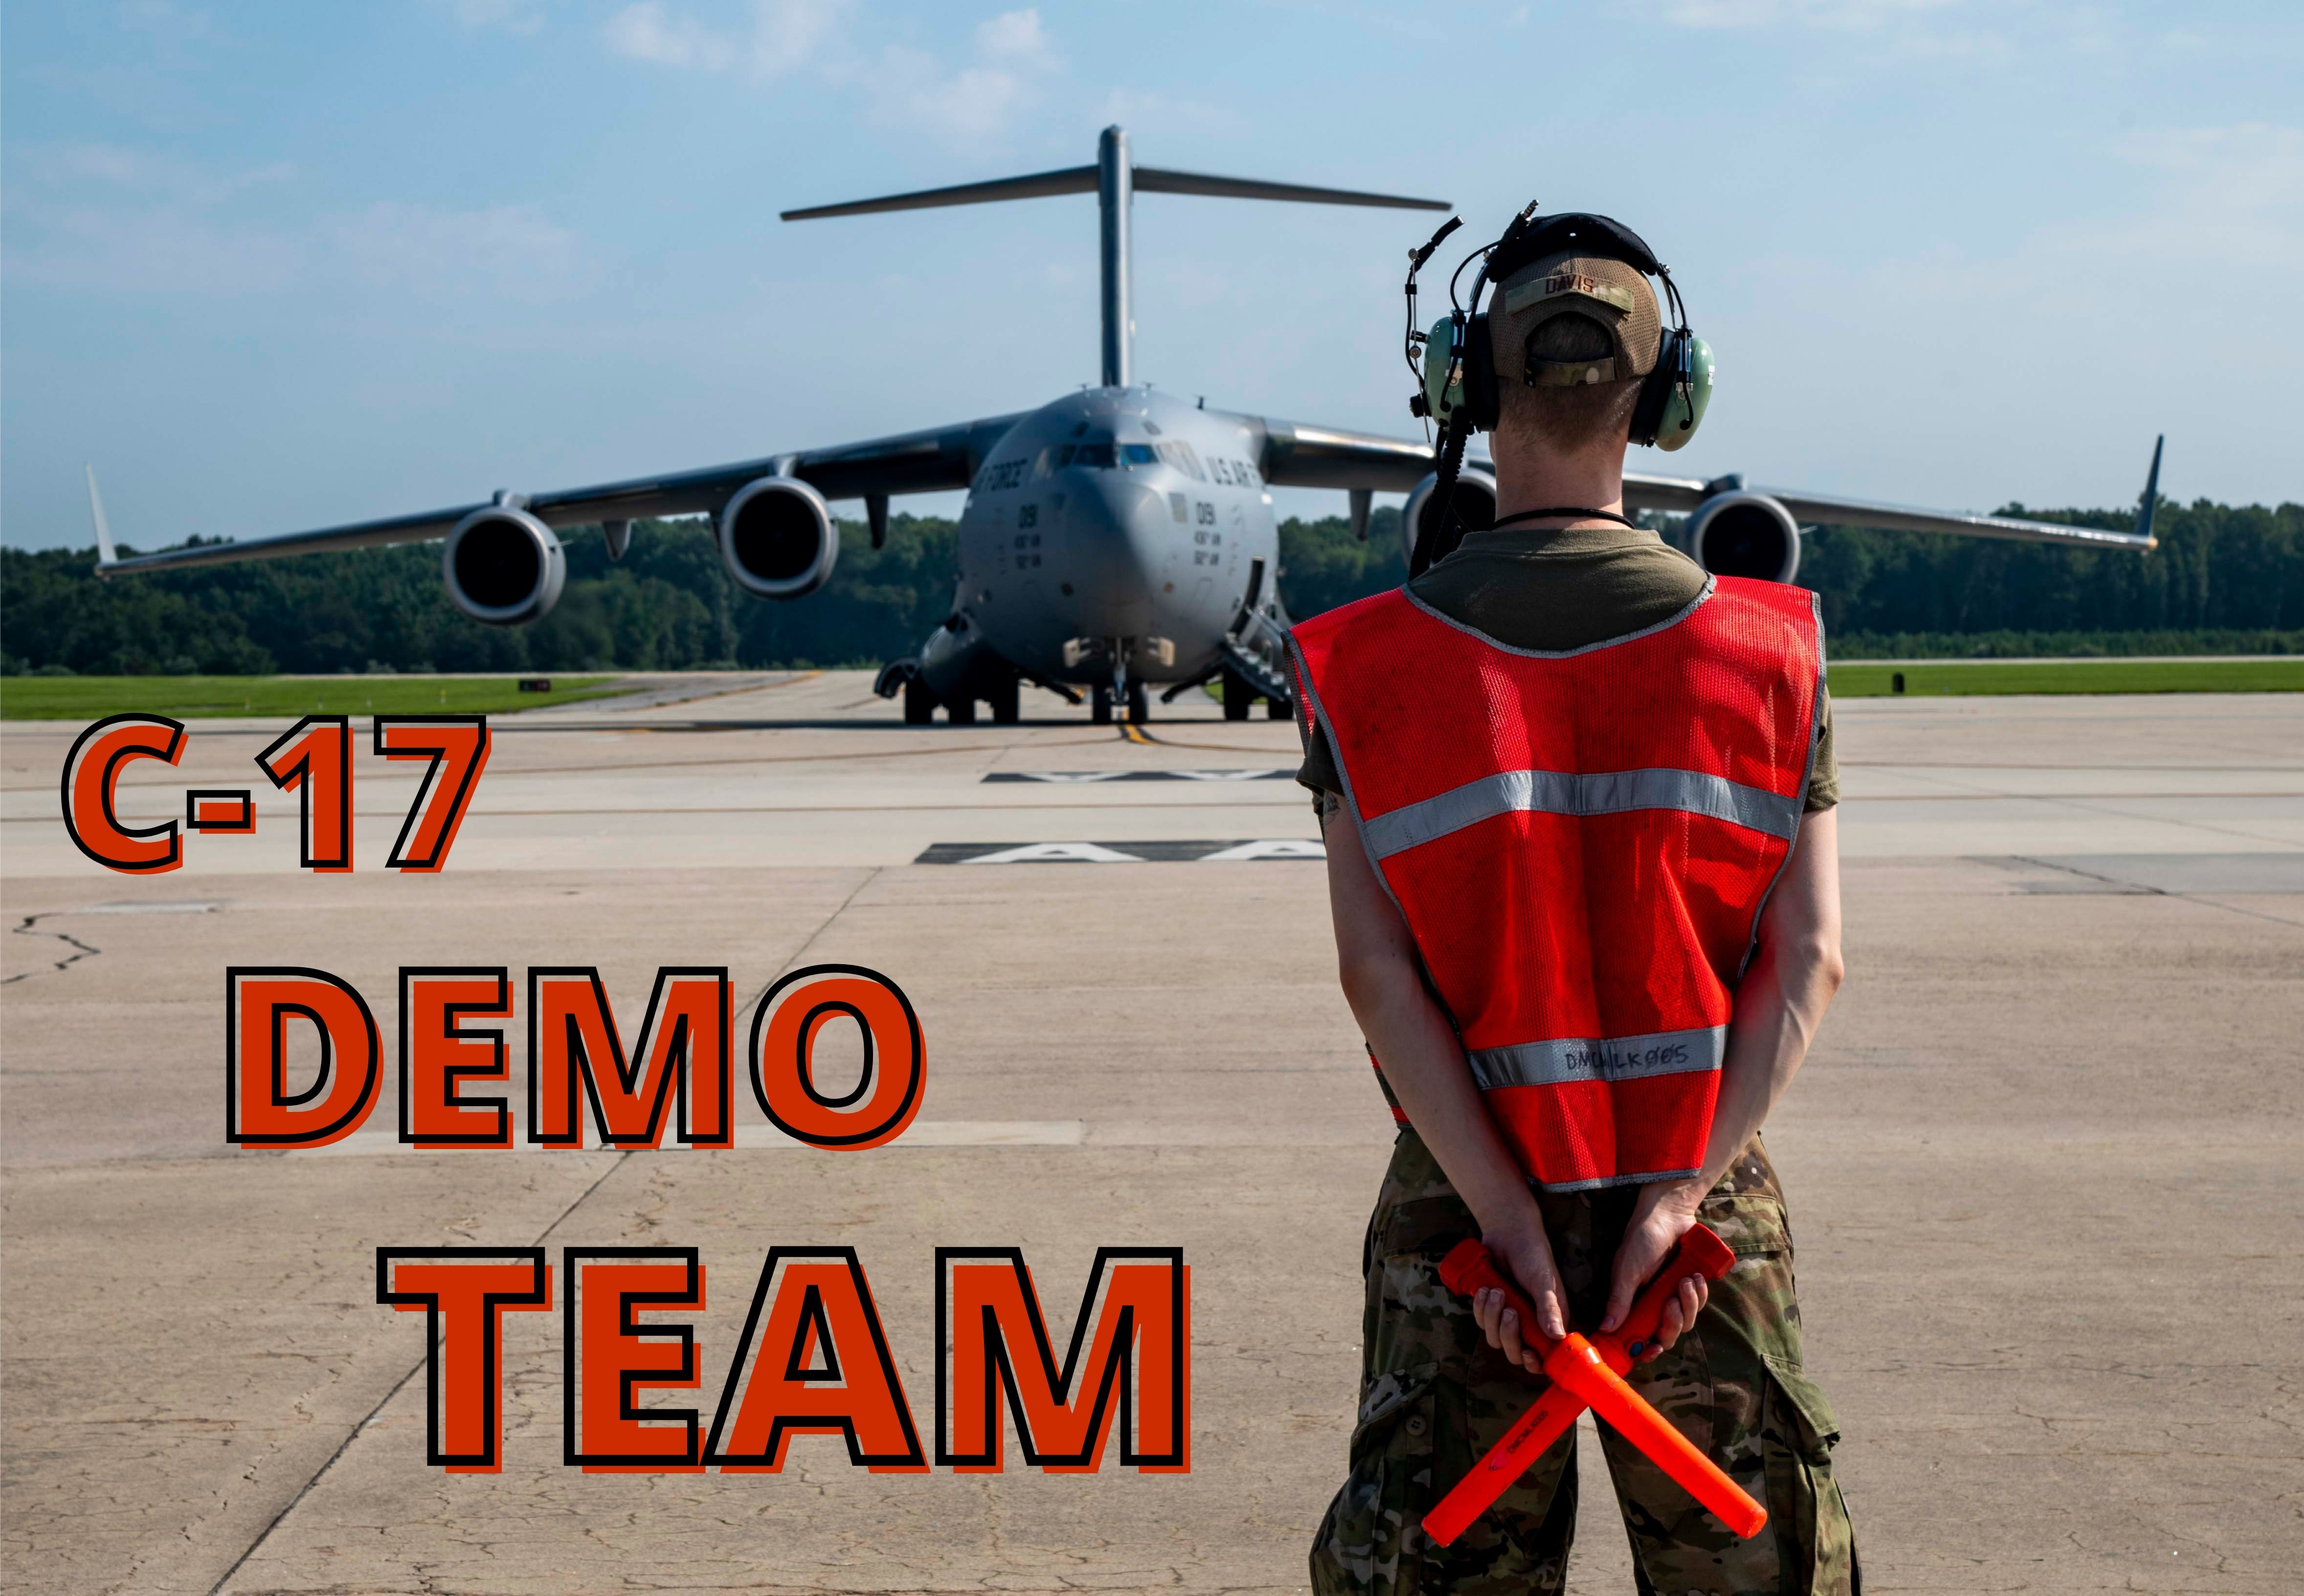 C-17 Demo Team